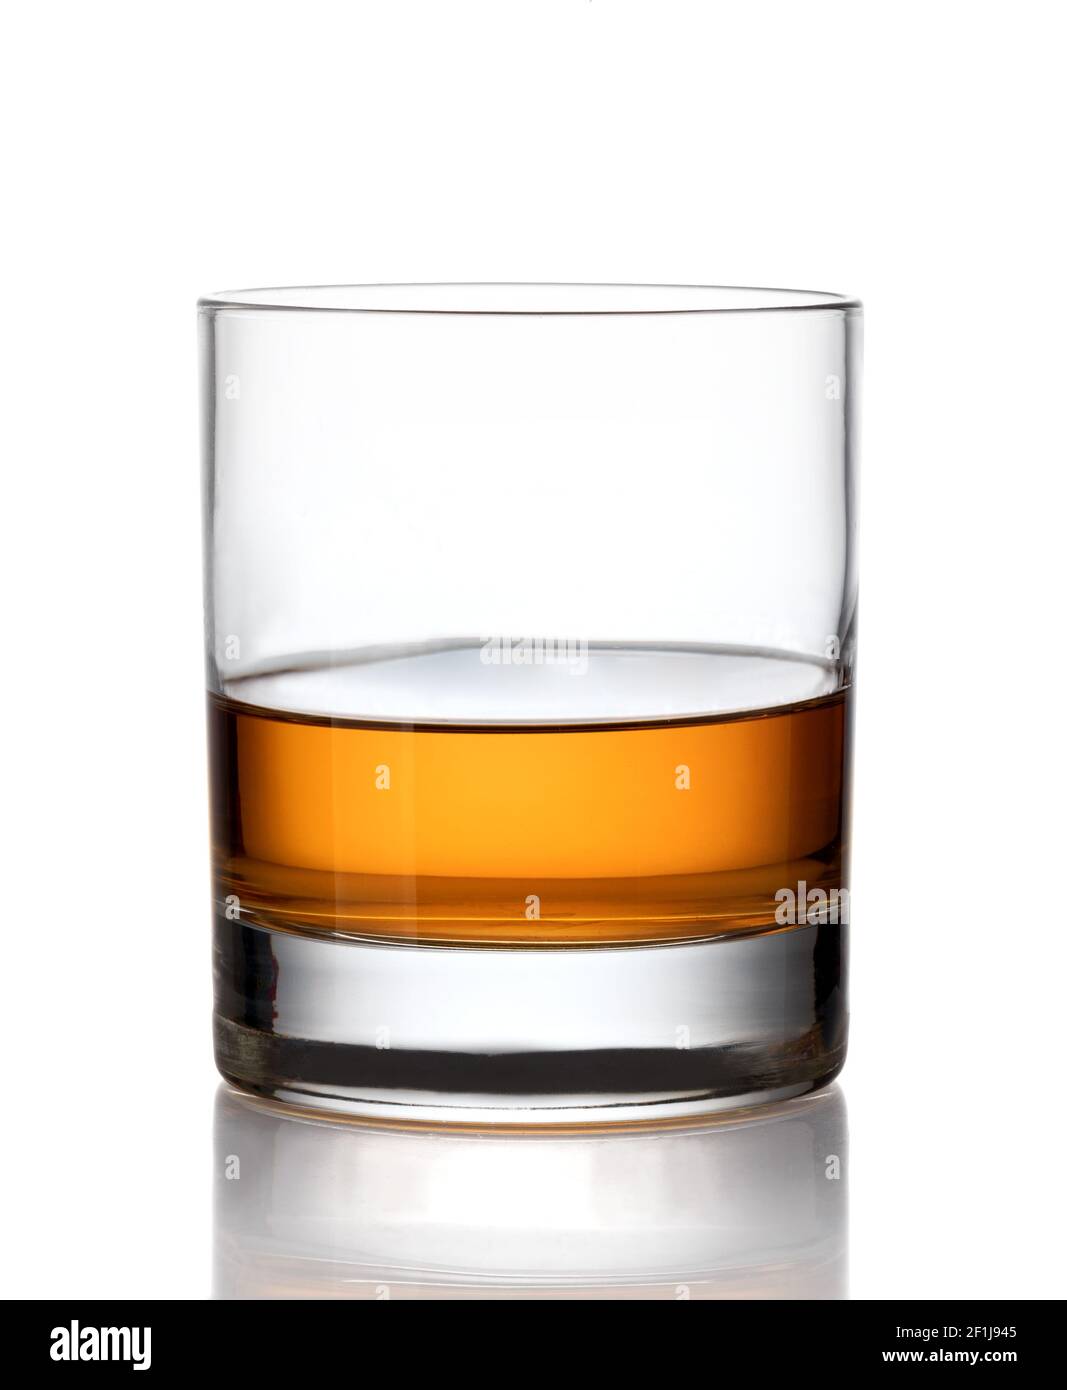 Verre de whisky écossais Banque D'Images